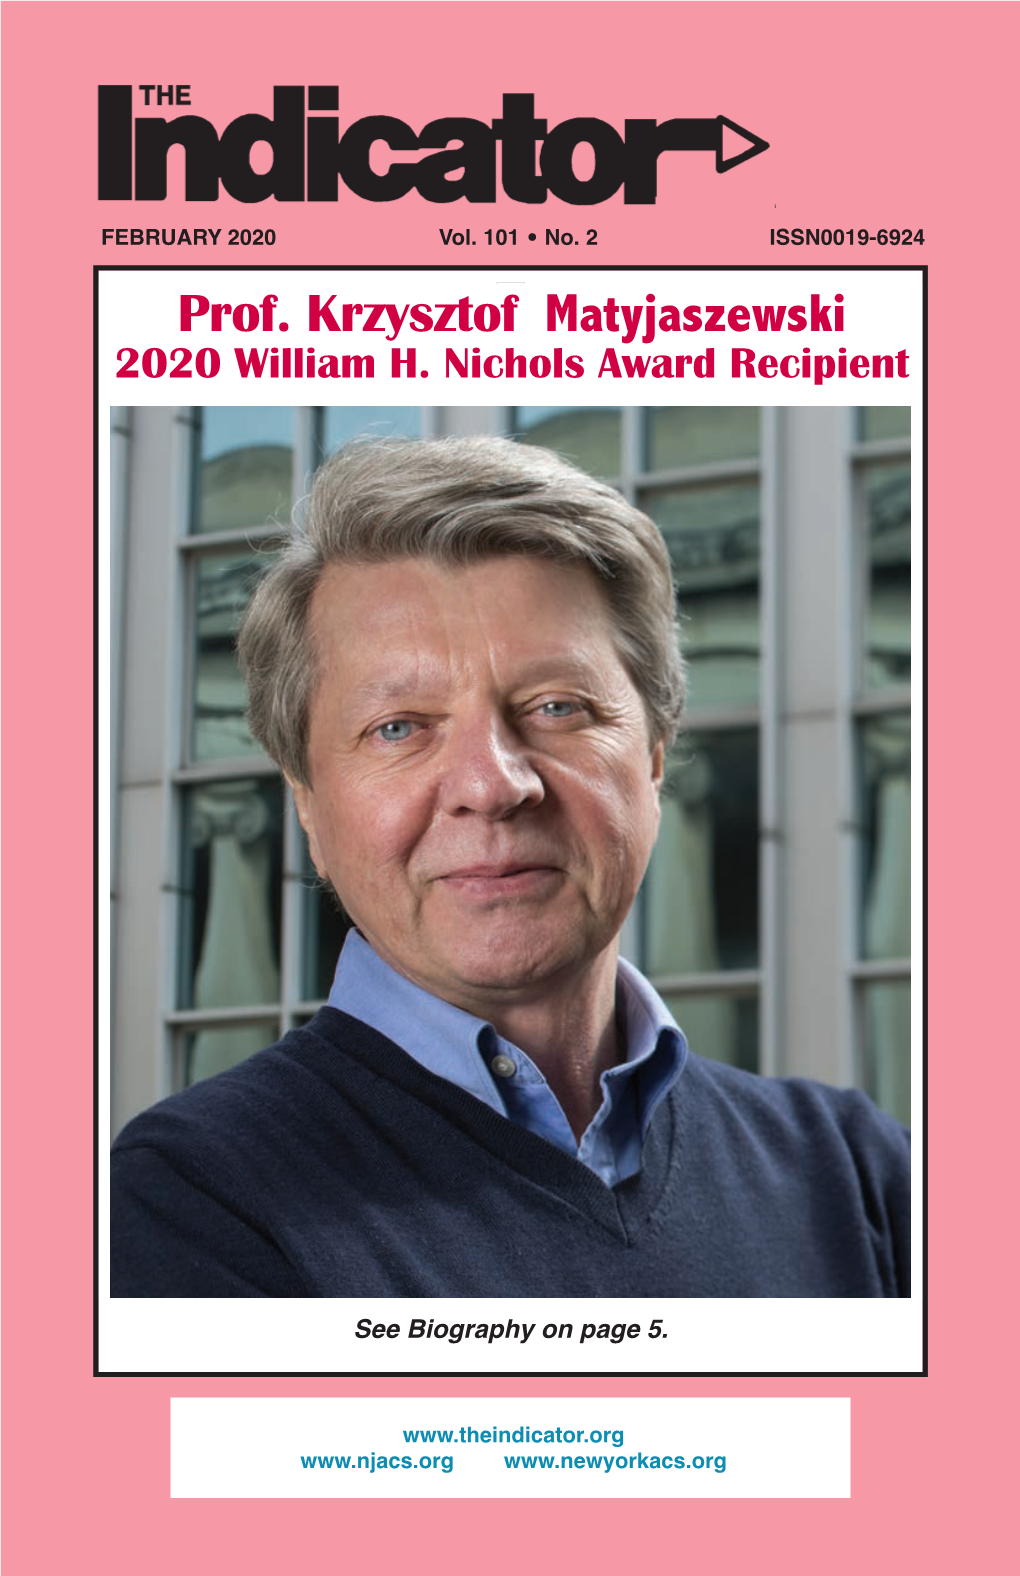 Prof. Krzysztof Matyjaszewski 2020 William H